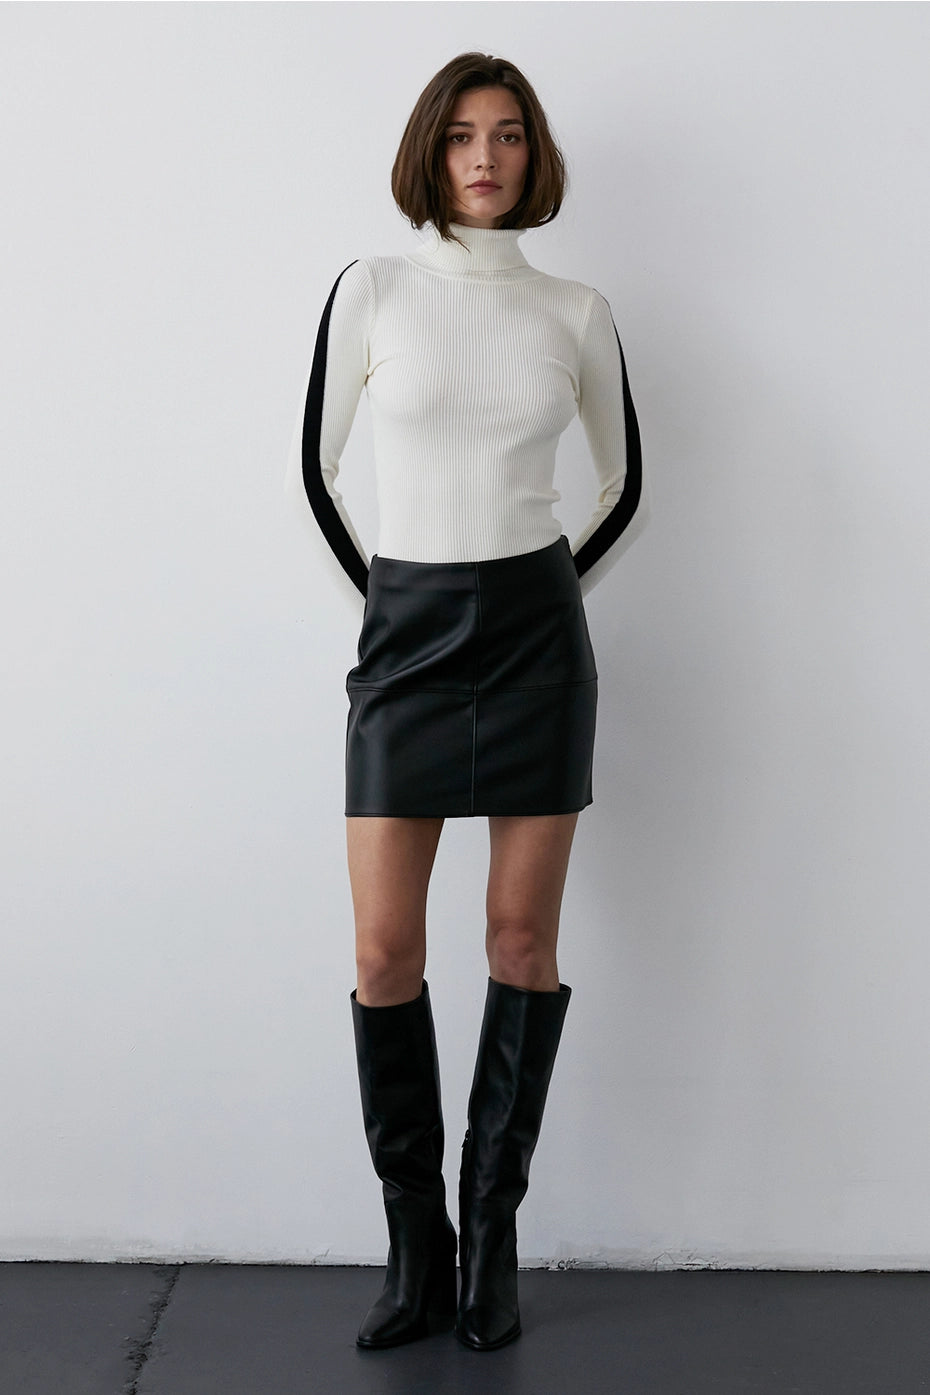 natalie vegan leather skirt